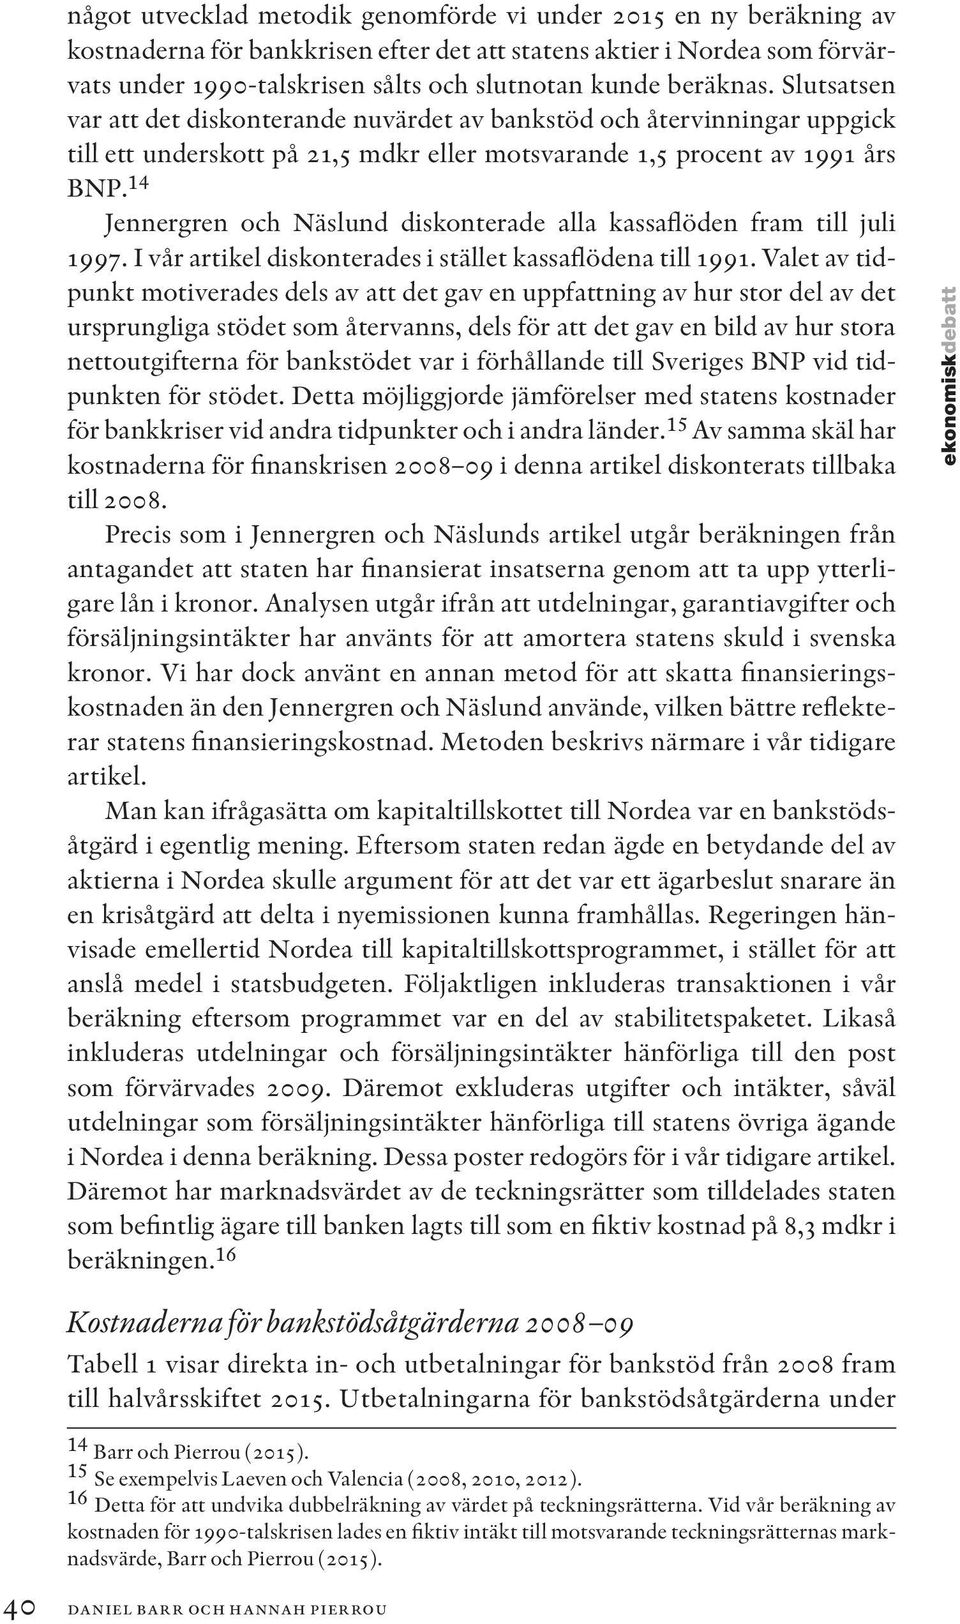 14 Jennergren och Näslund diskonterade alla kassaflöden fram till juli 1997. I vår artikel diskonterades i stället kassaflödena till 1991.